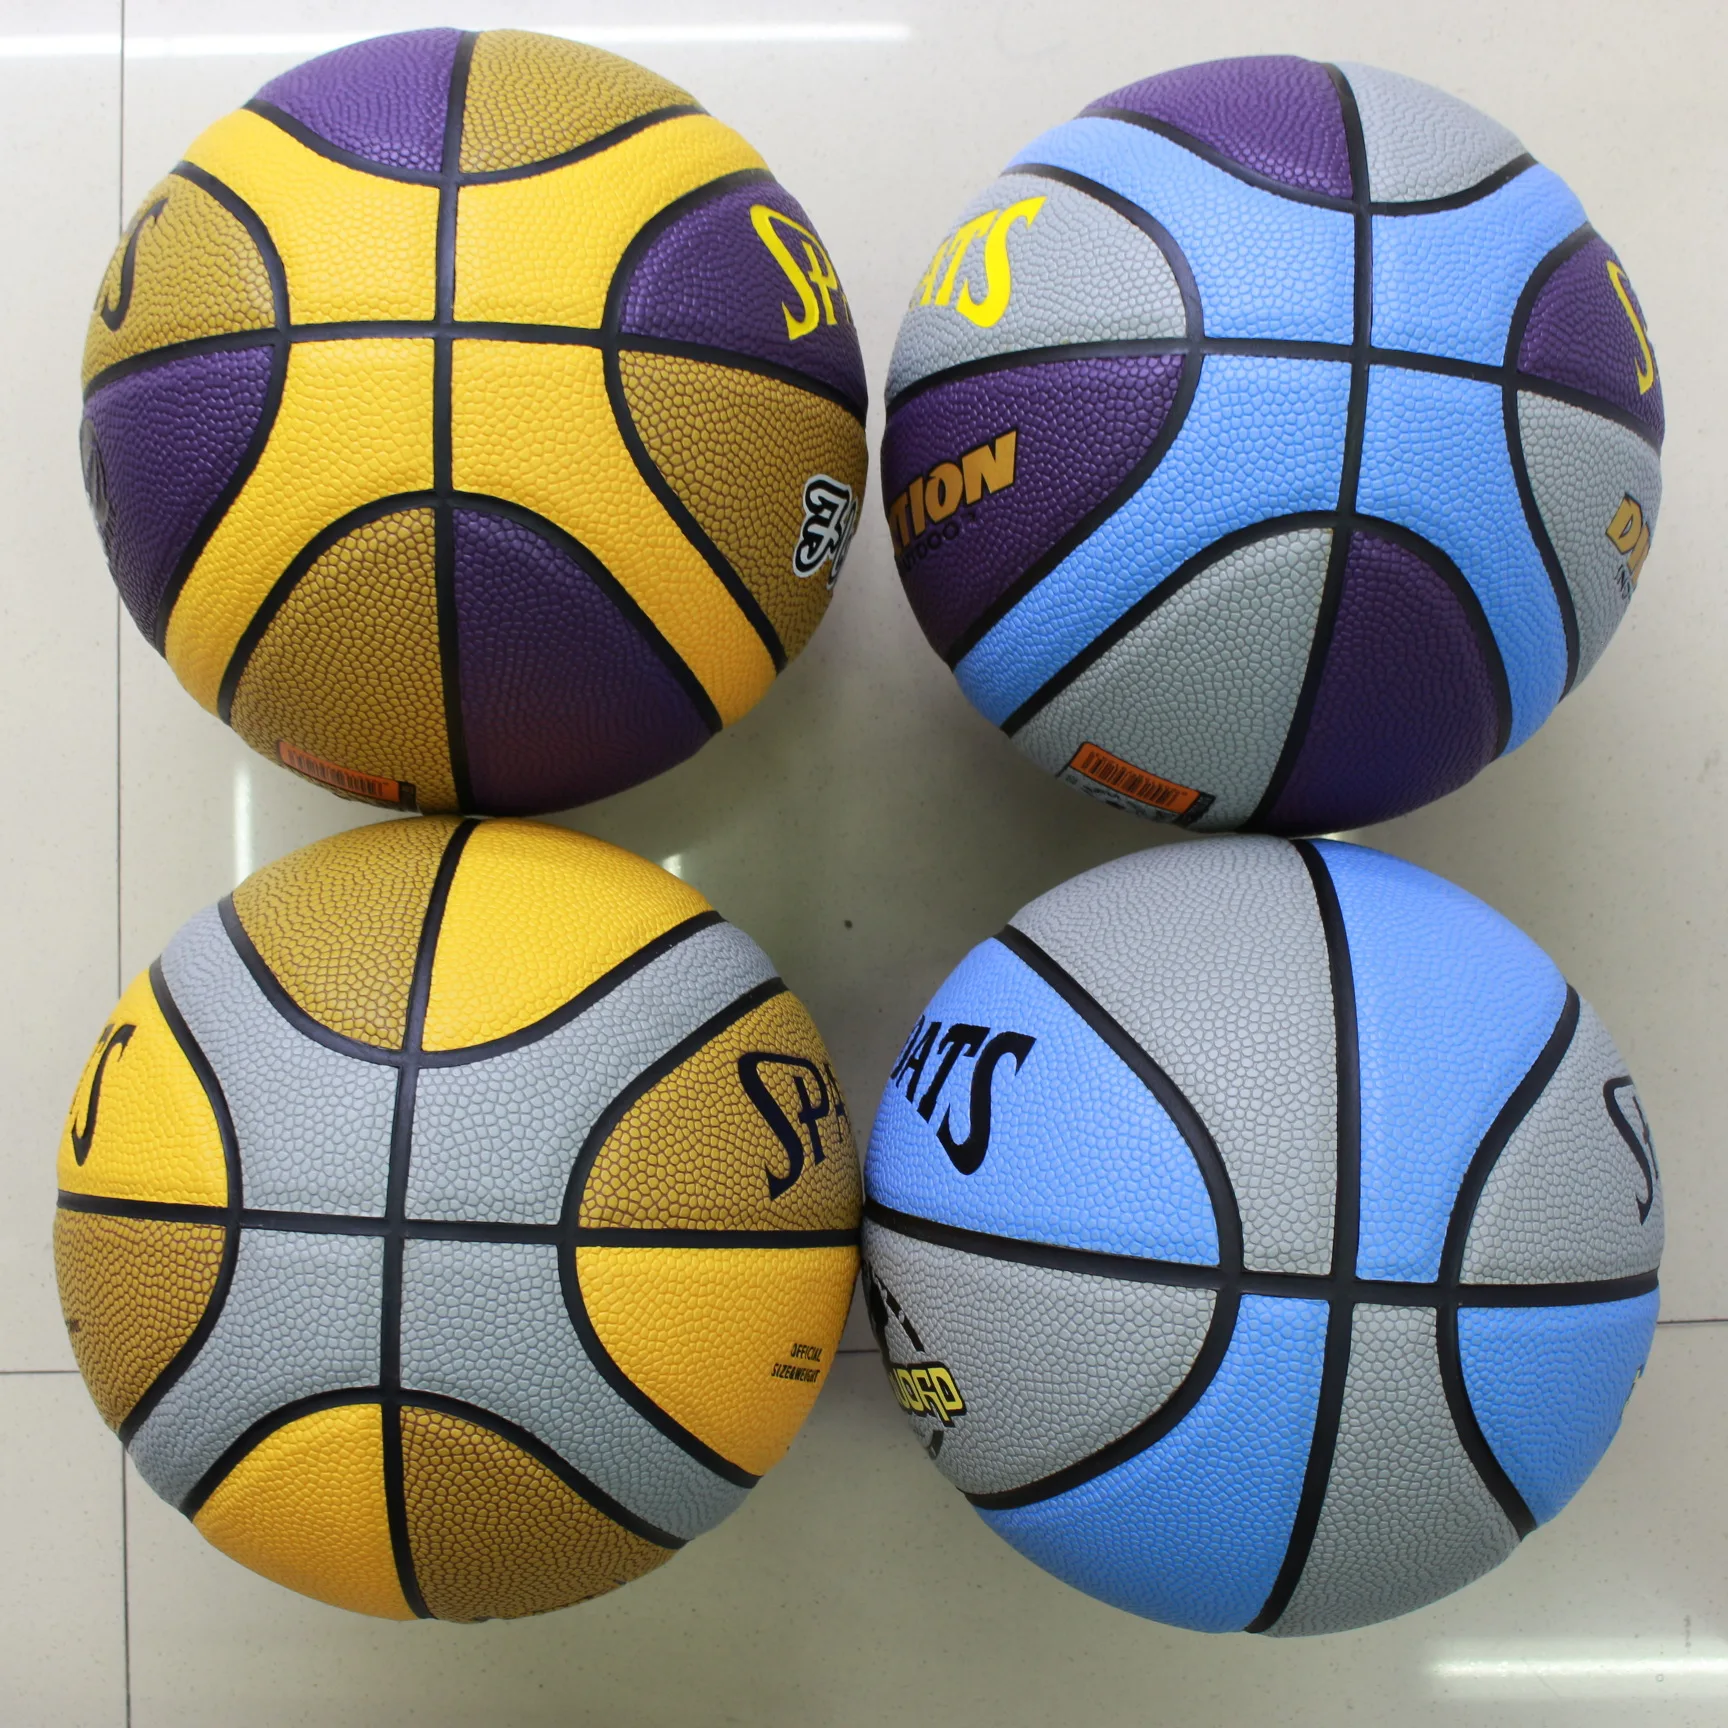 

Баскетбольный мяч унисекс, баскетбольный мяч из искусственной кожи, Размер 7, для тренировок в помещении и улице